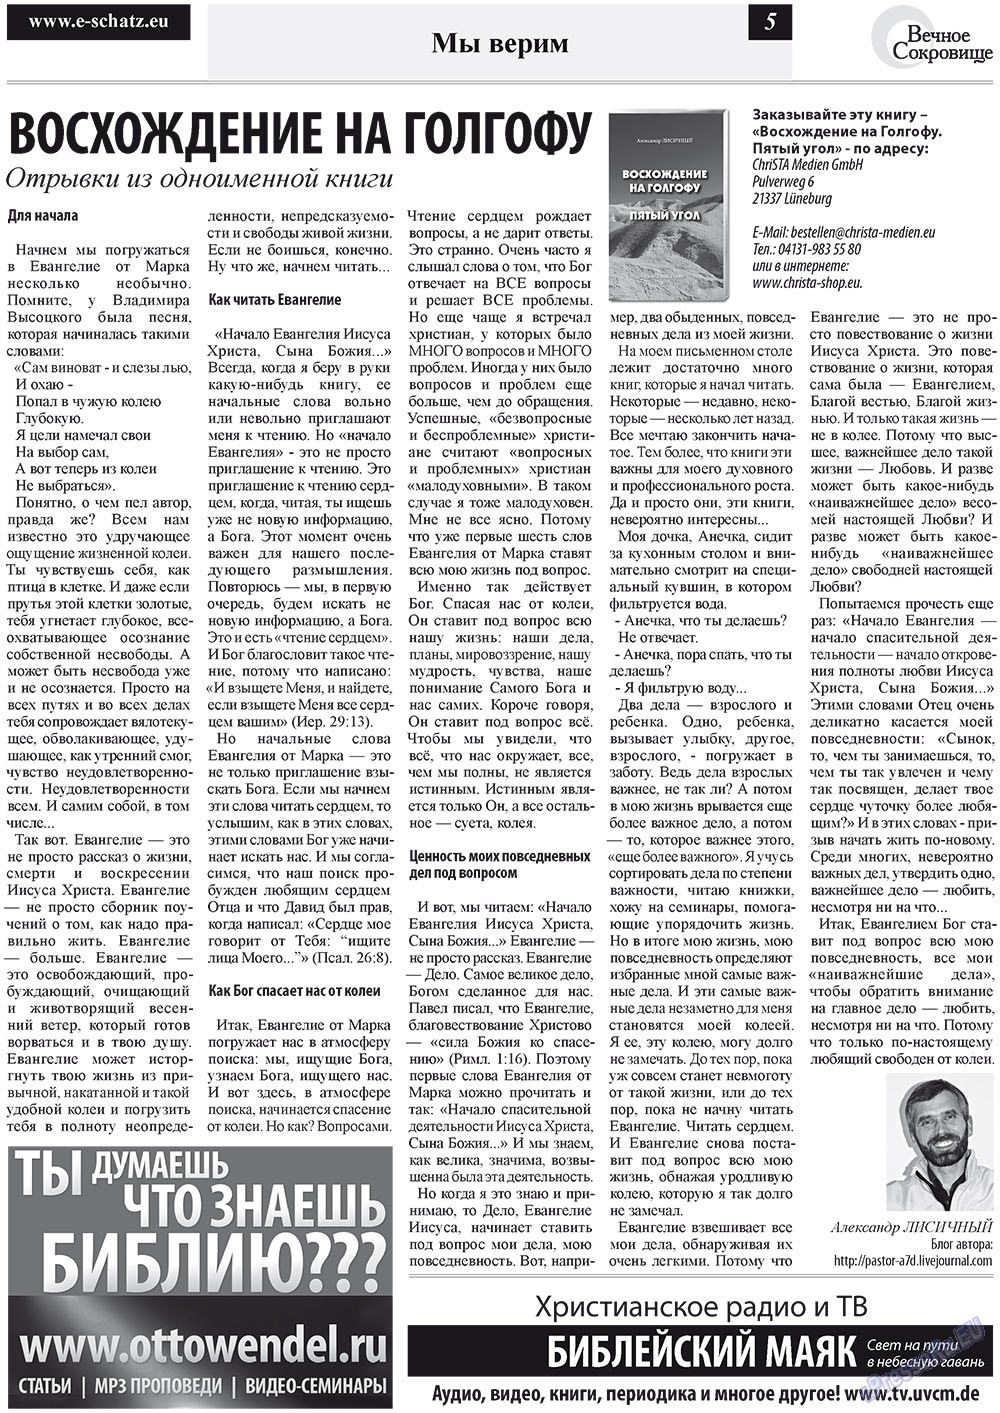 Вечное сокровище (газета). 2012 год, номер 1, стр. 5